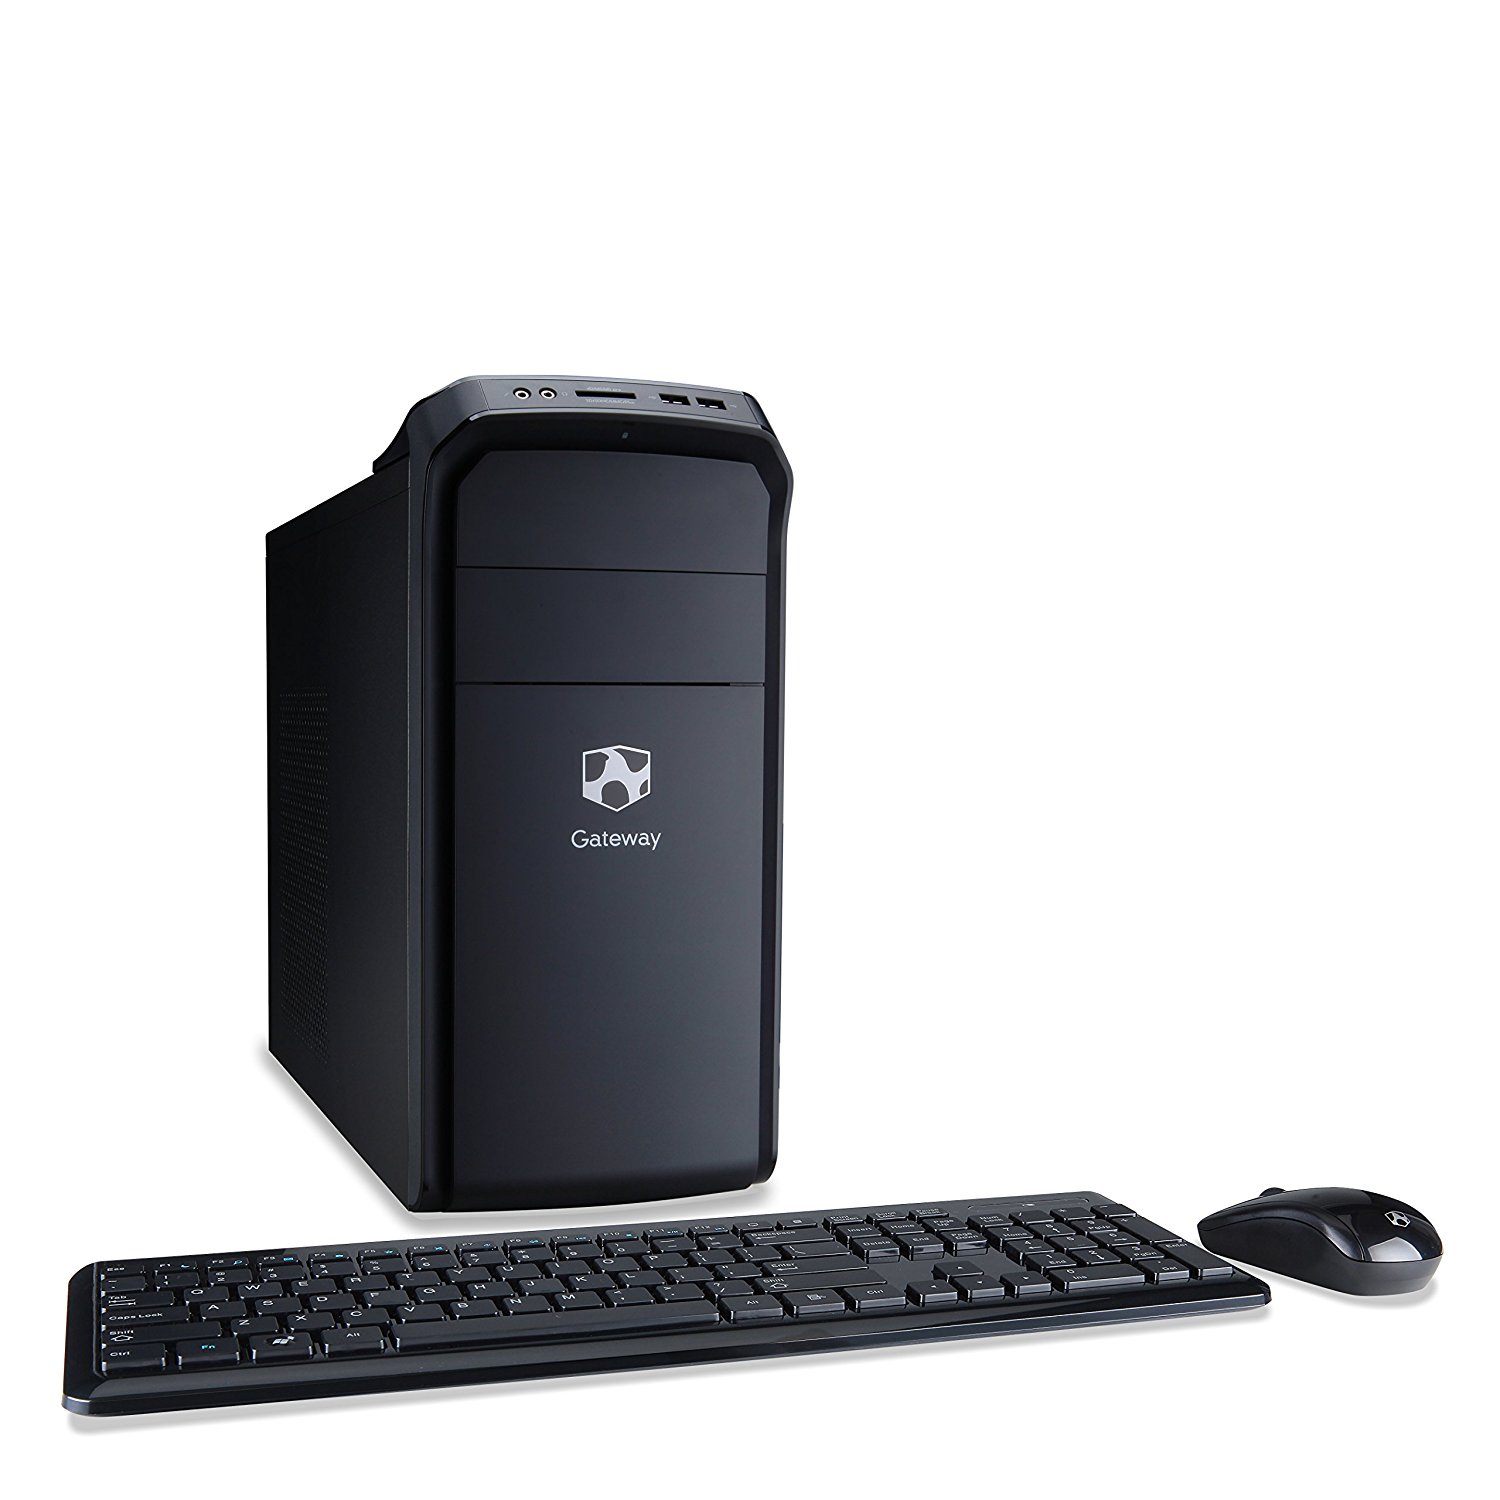 Amazon.com: Gateway DX4375-UR22 Desktop: Computers & Accessories